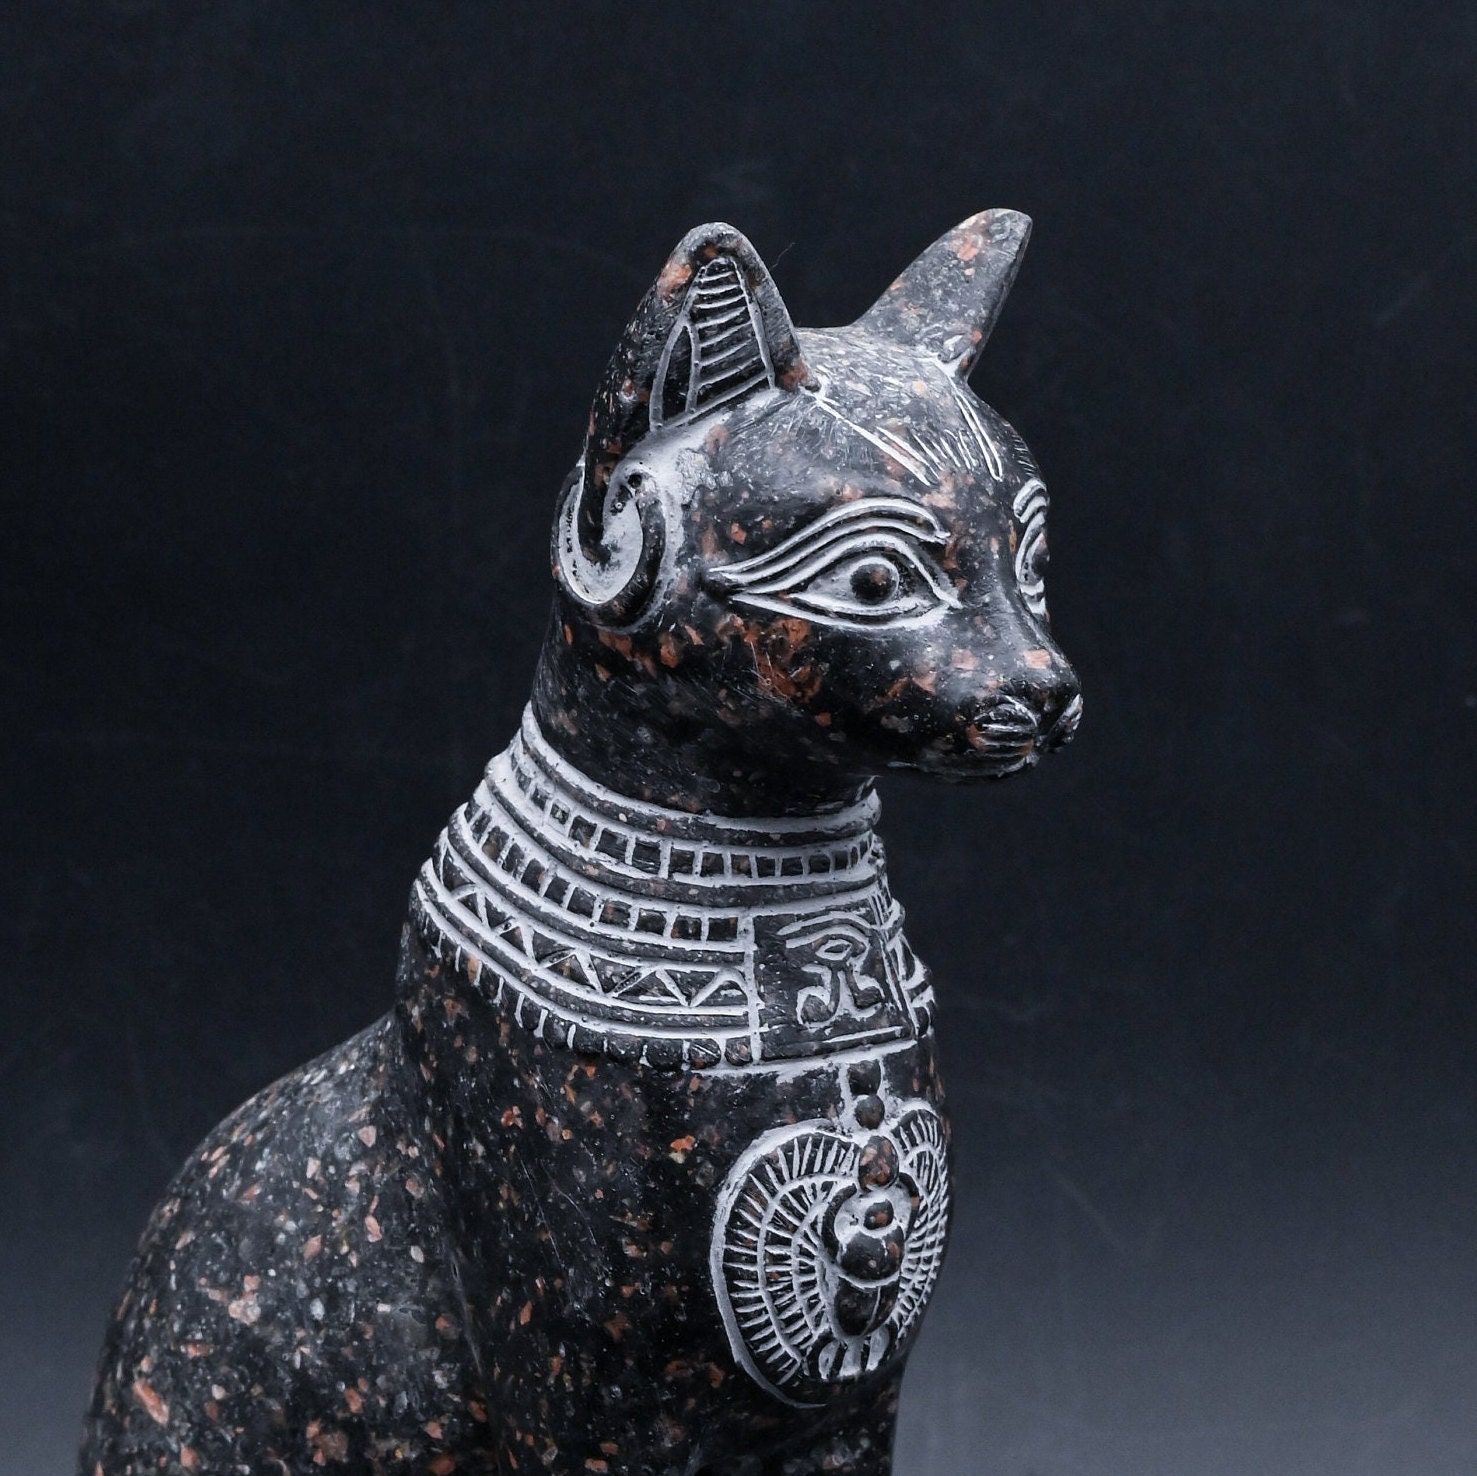 Statuette de chat égyptien Bastet